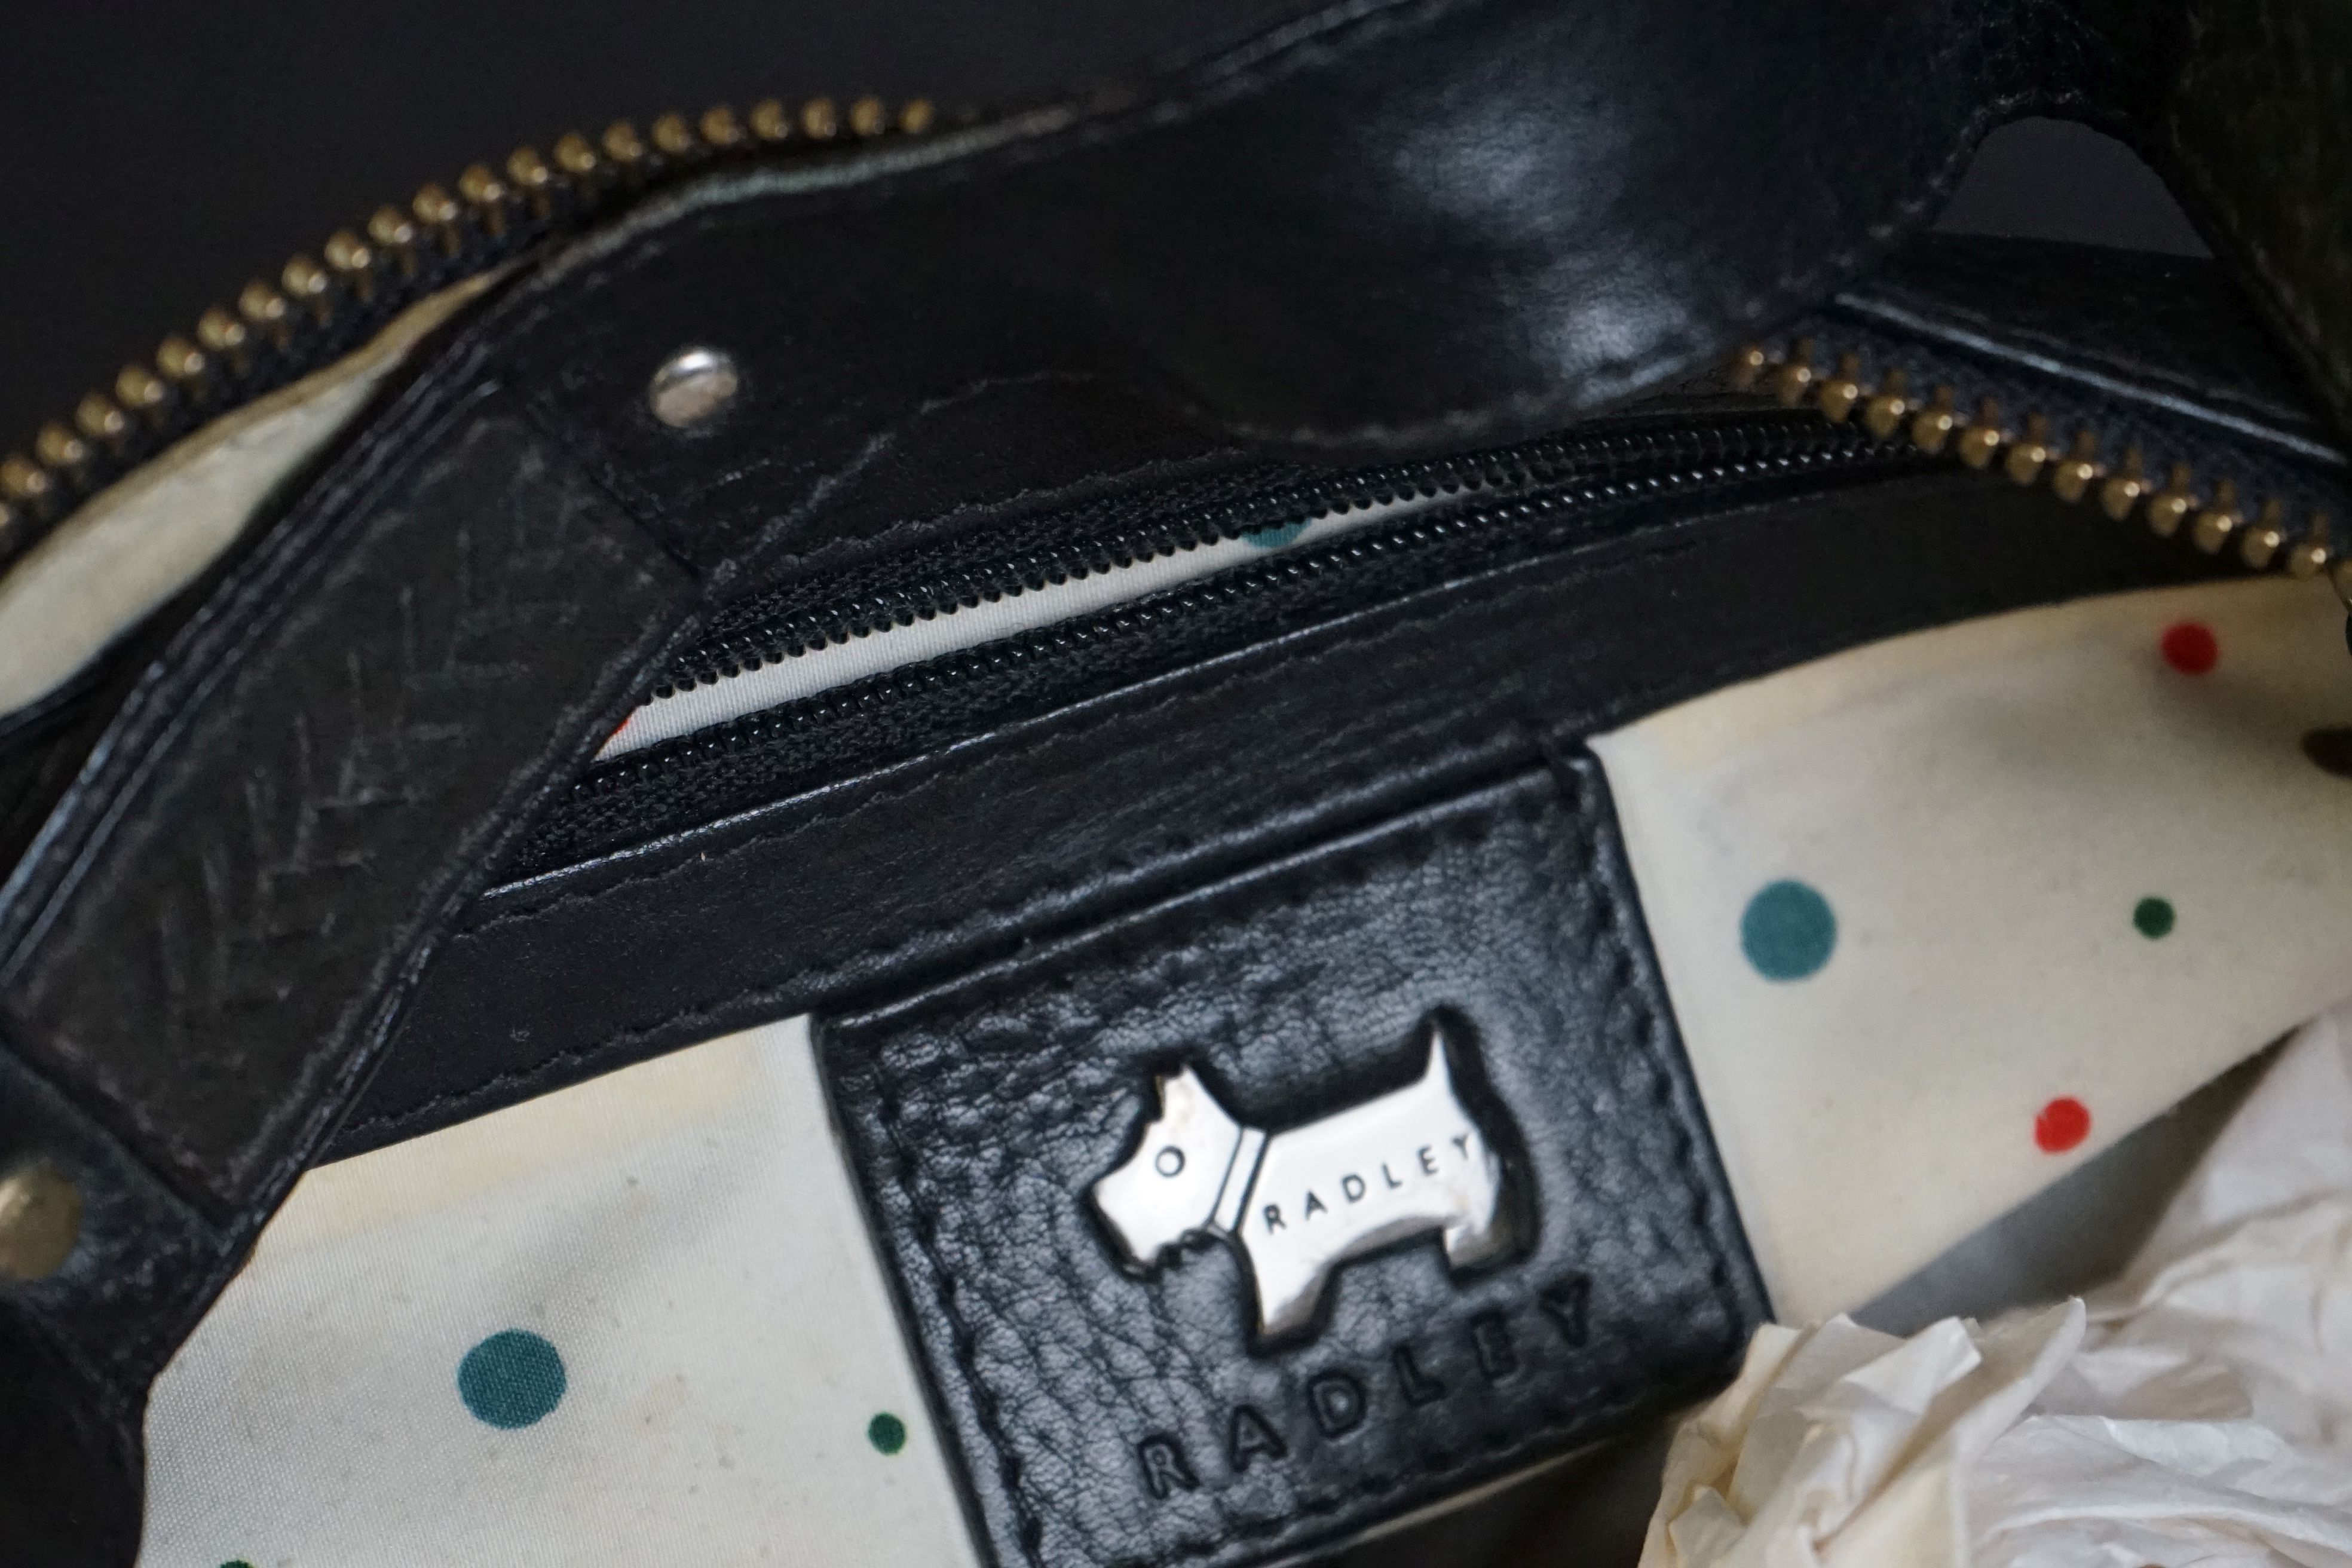 A black Radley handbag with fringed detail, grey Radley dog and pink dust bag. - Image 5 of 5